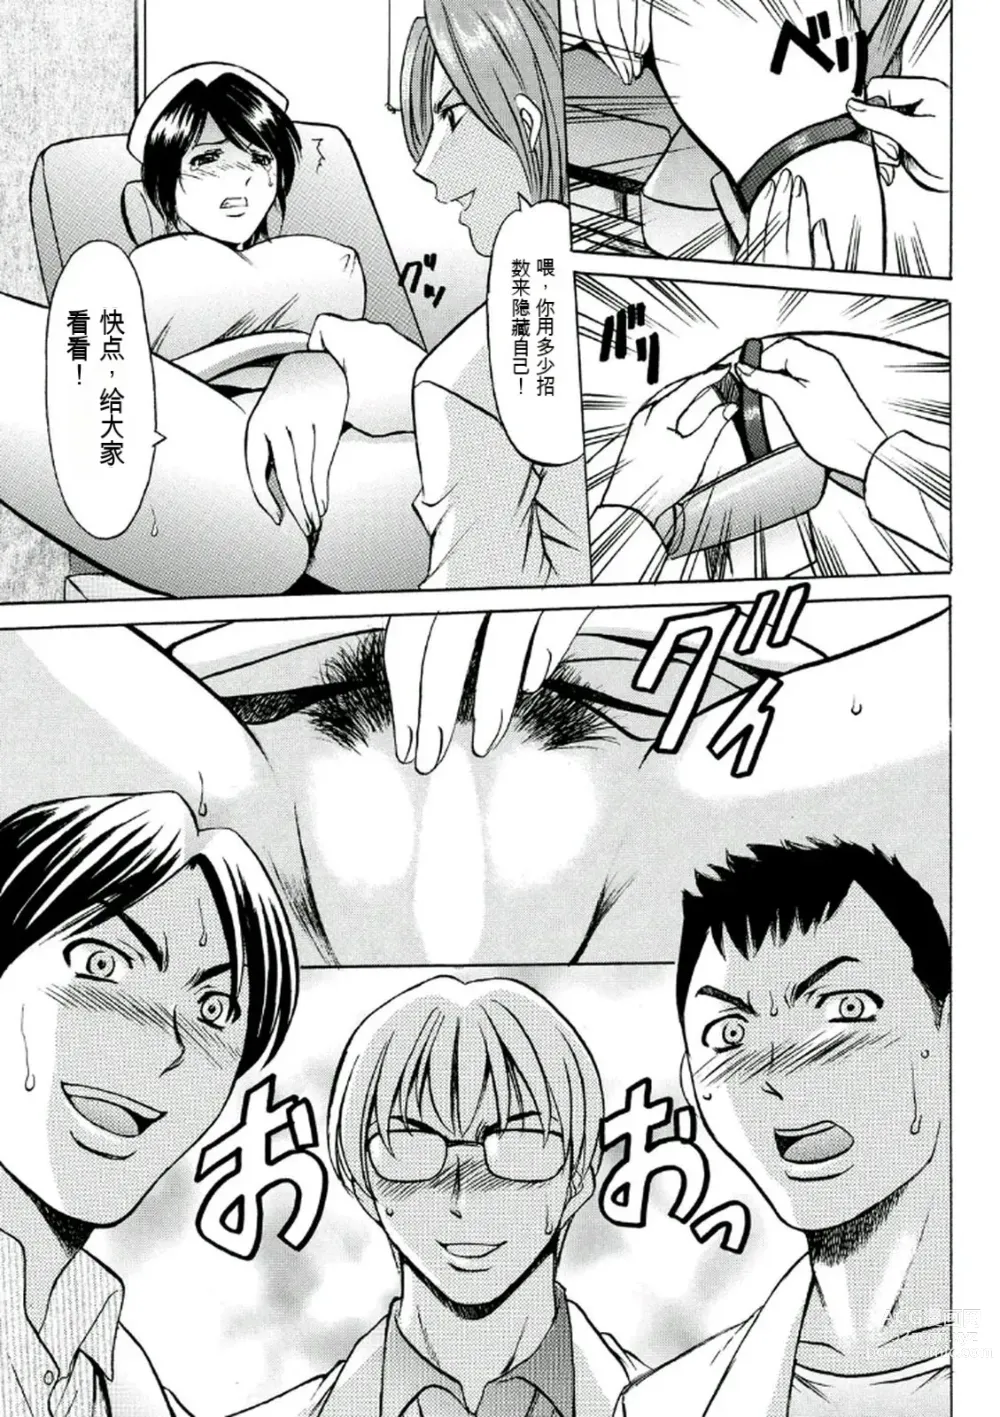 Page 31 of manga Chijoku Byoutou -Hakui no Datenshi-